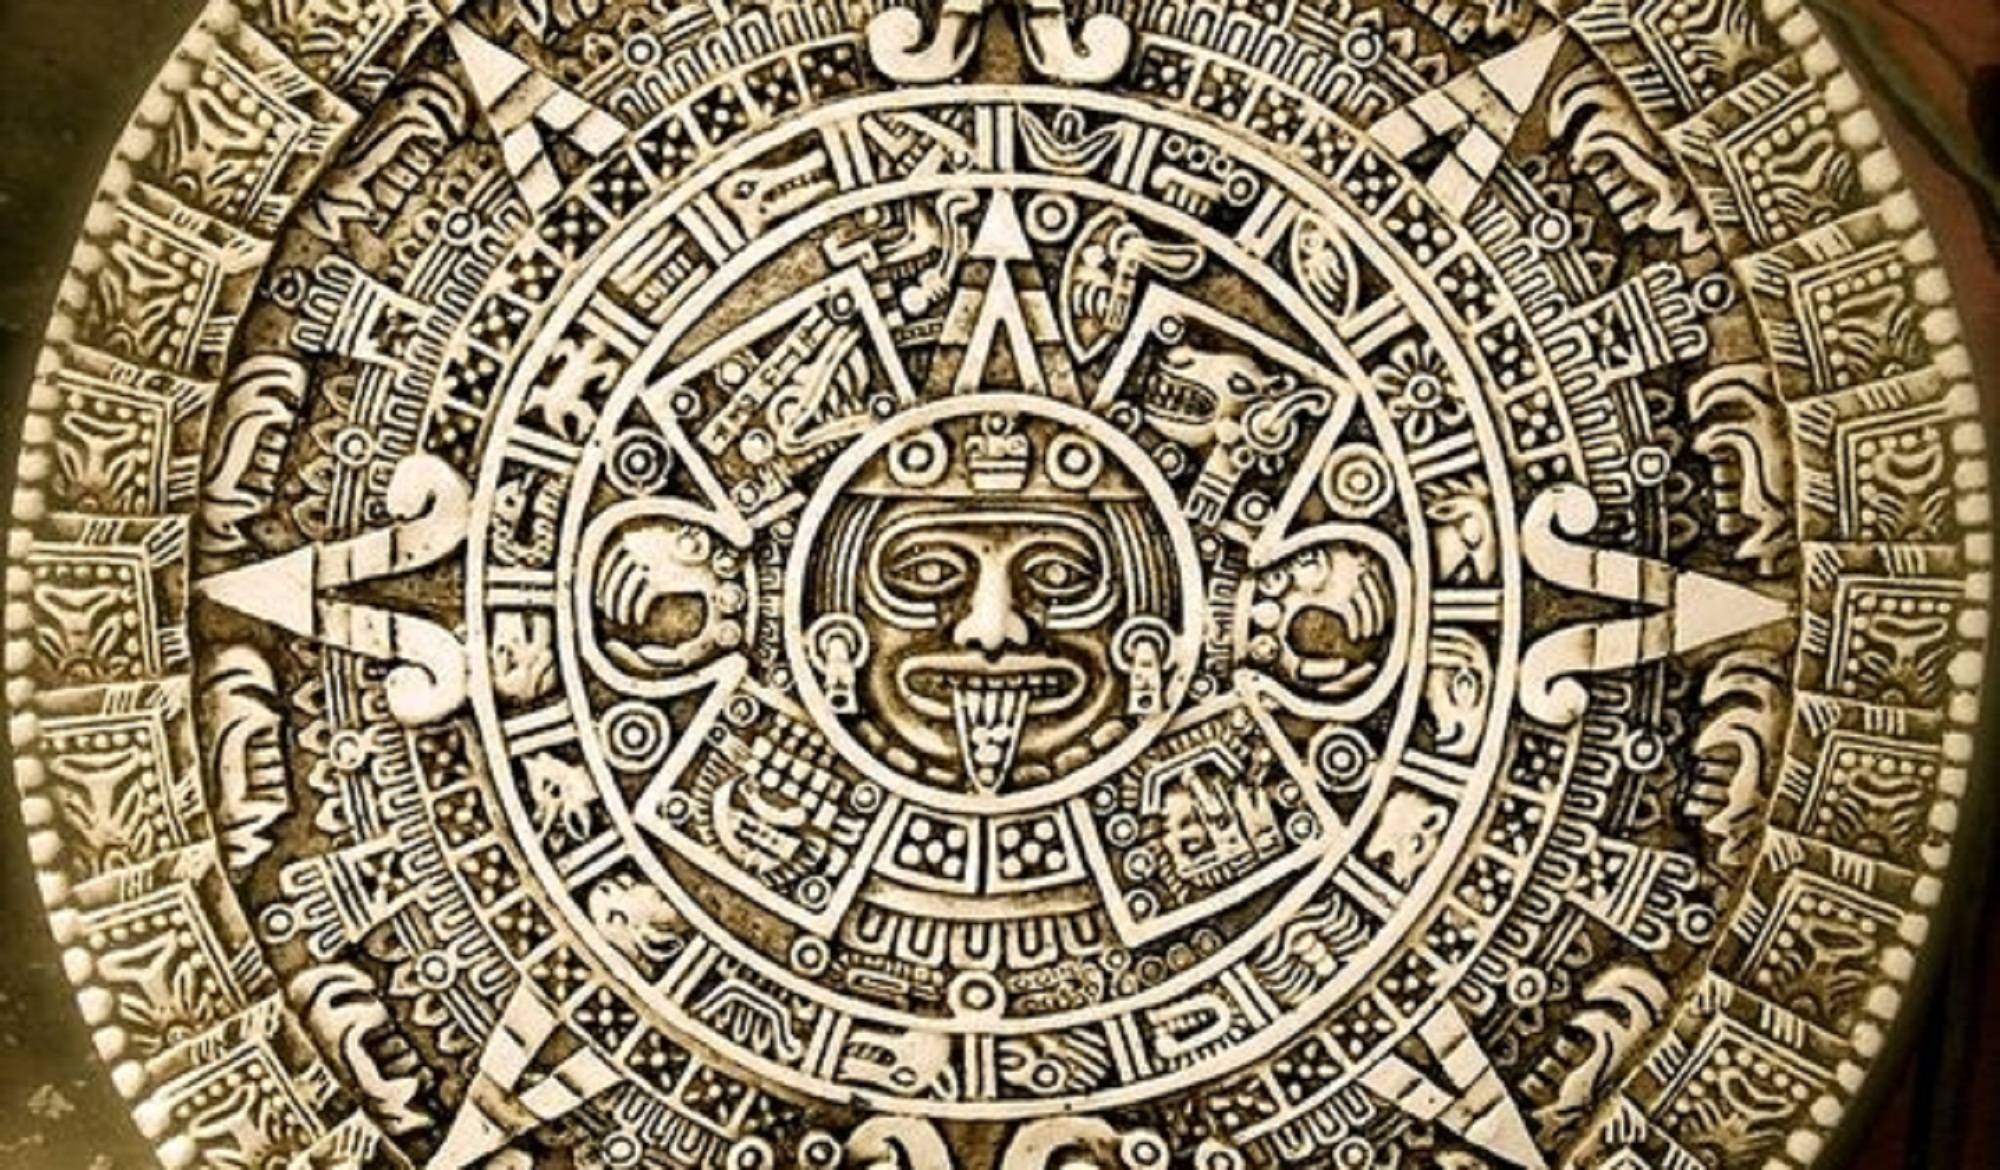 Calendarul aztec și filozofia timpului